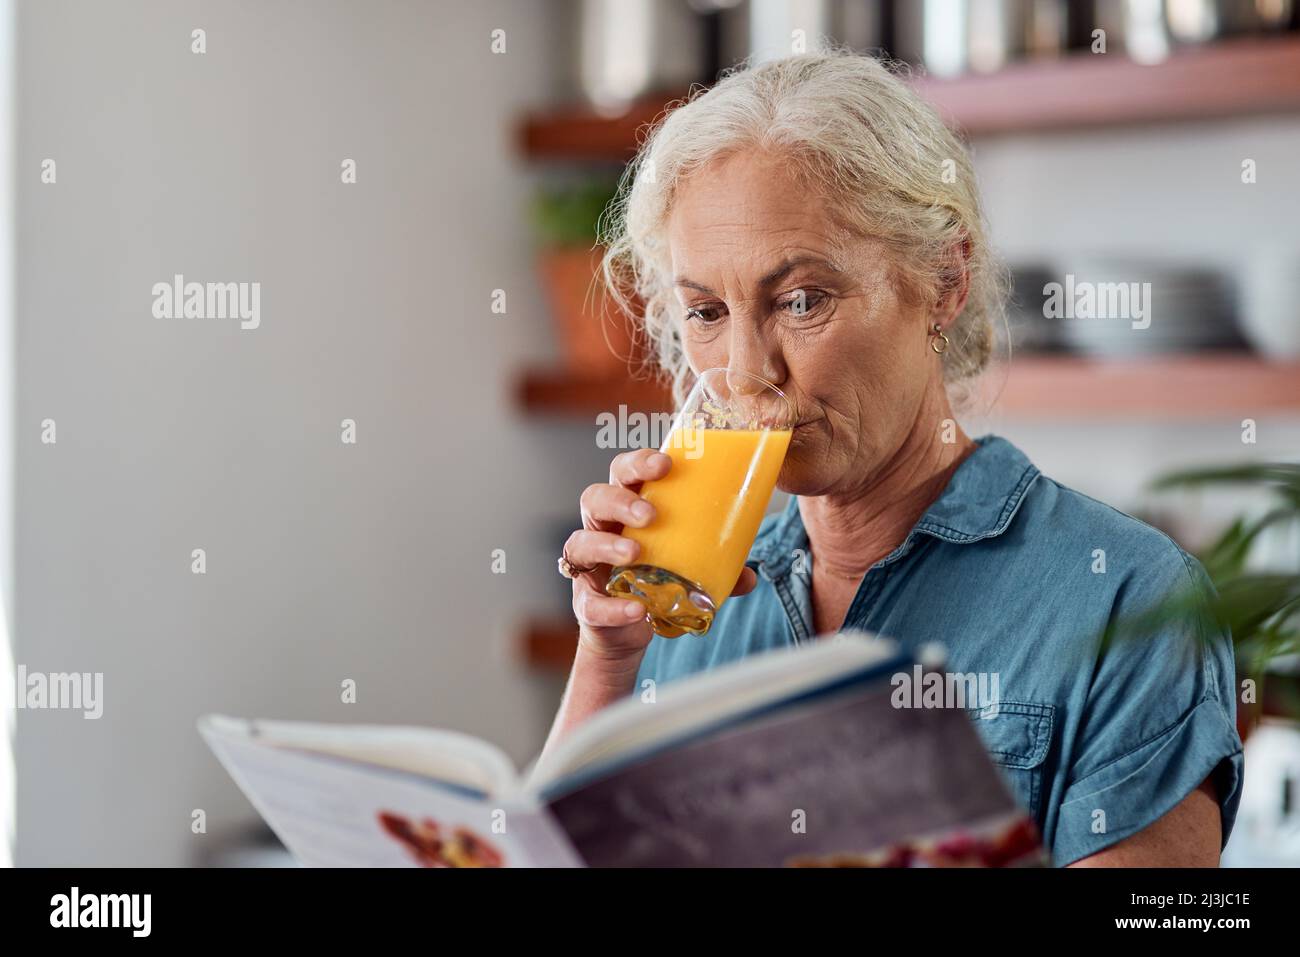 Es ist keine Diät, es ist eine Lebensweise. Aufnahme einer reifen Frau, die ein Buch liest, während sie zu Hause Orangensaft getrunken hat. Stockfoto